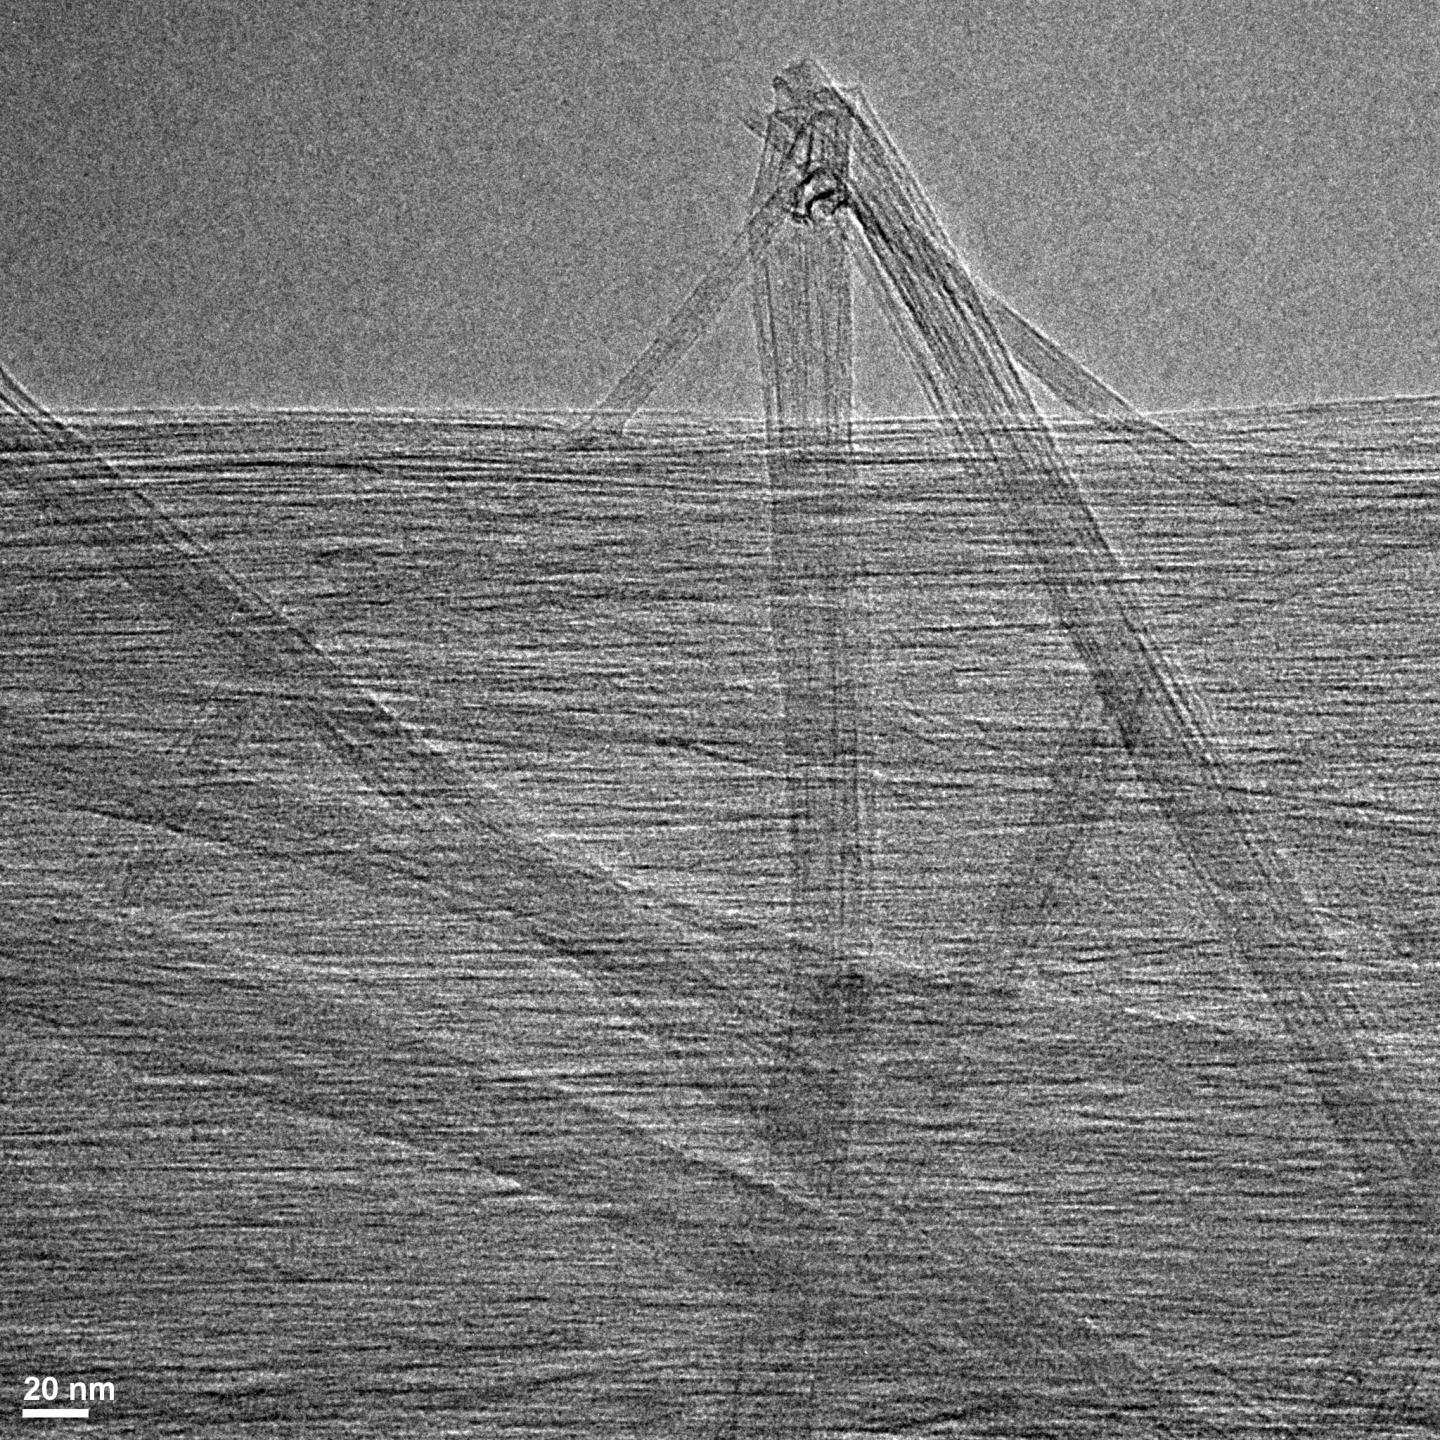 Purified Carbon Nanotubes